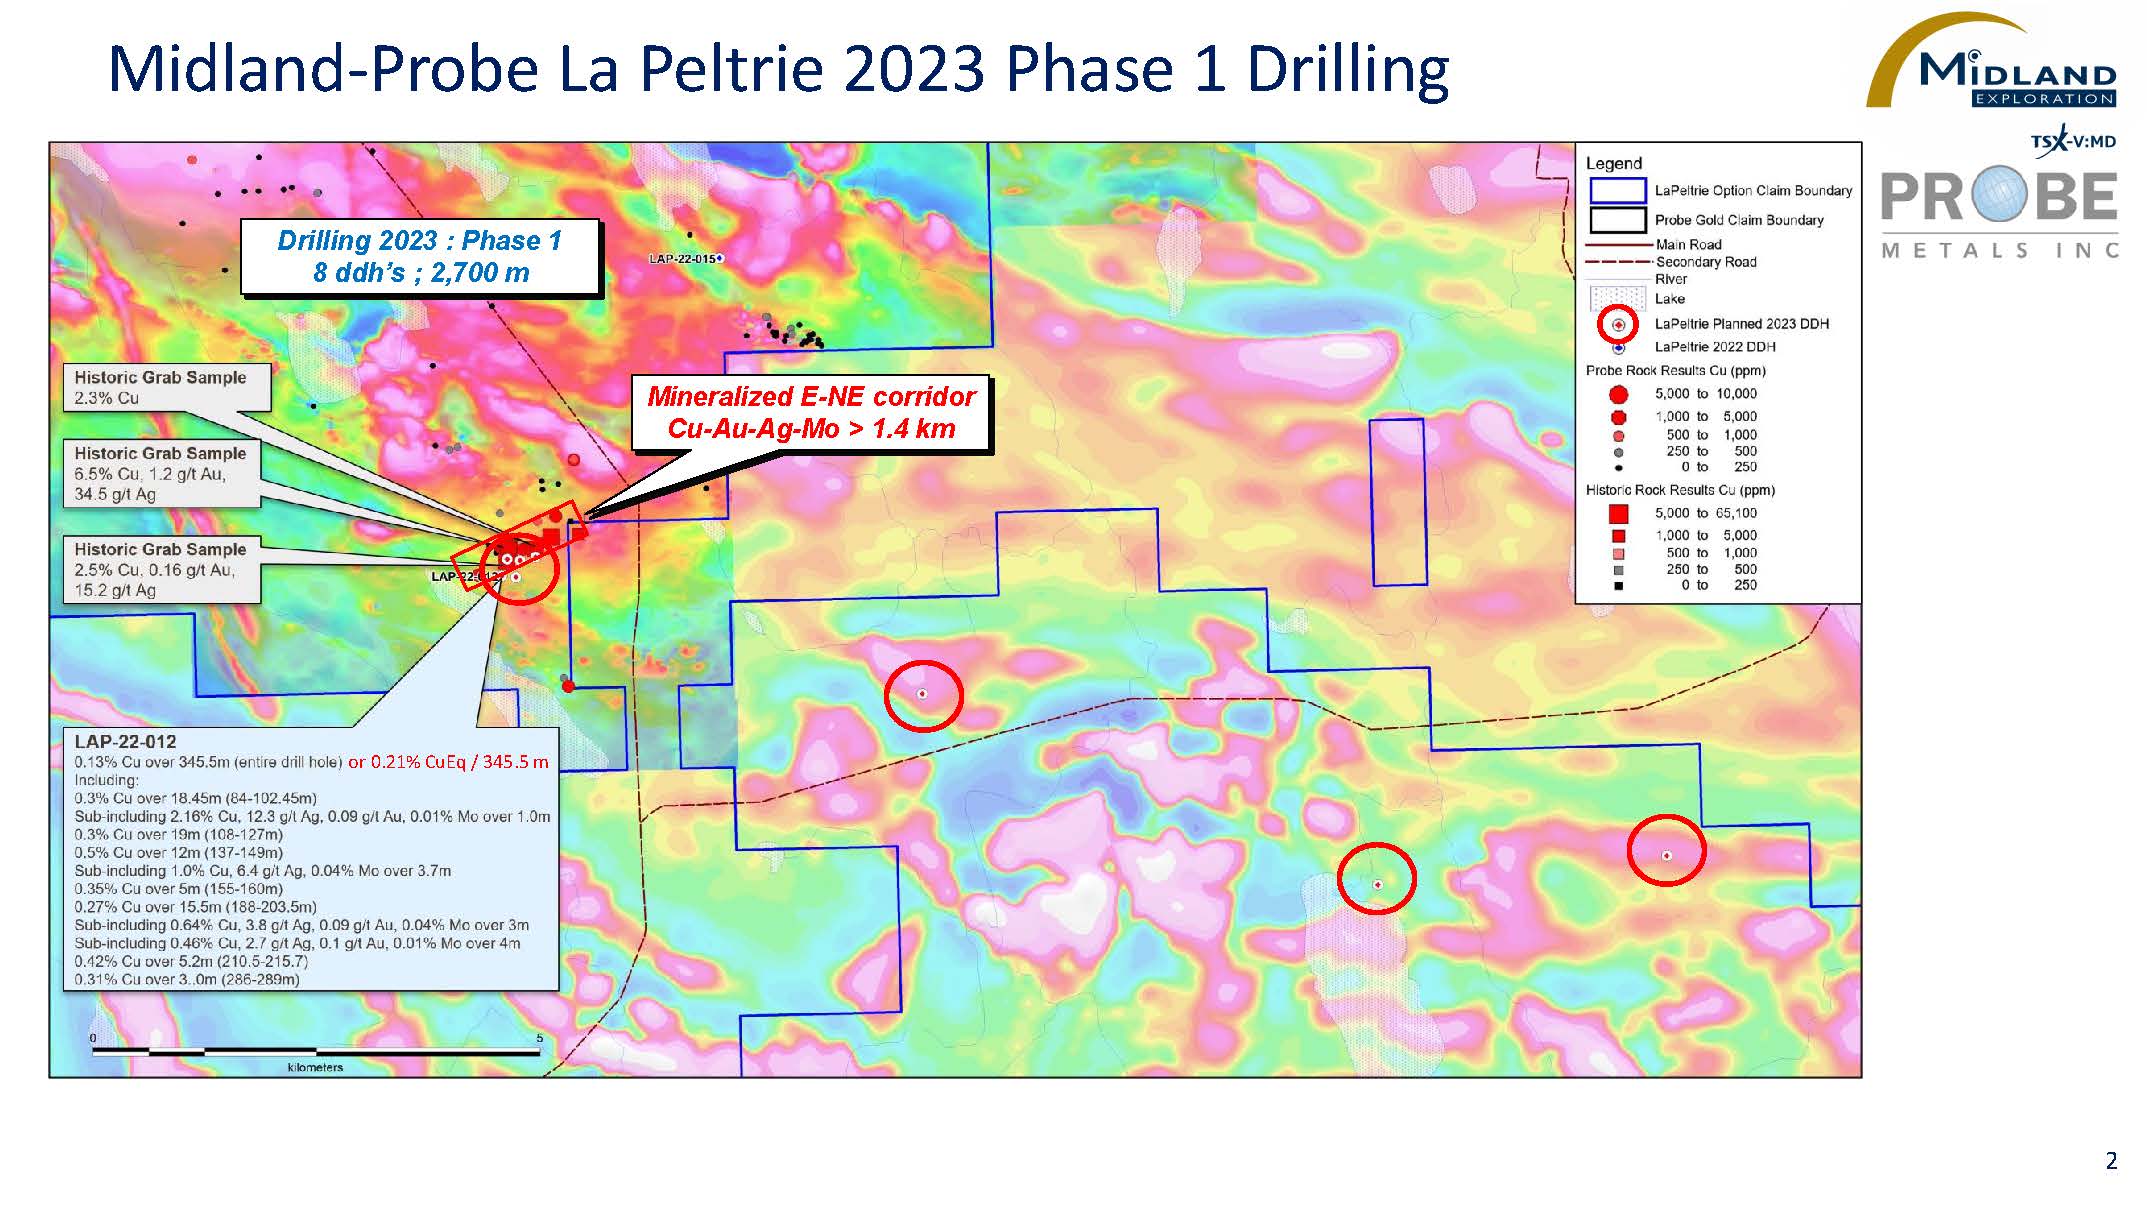 Figure 2 MD-Probe La Peltrie 2023 Phase 1 Drilling